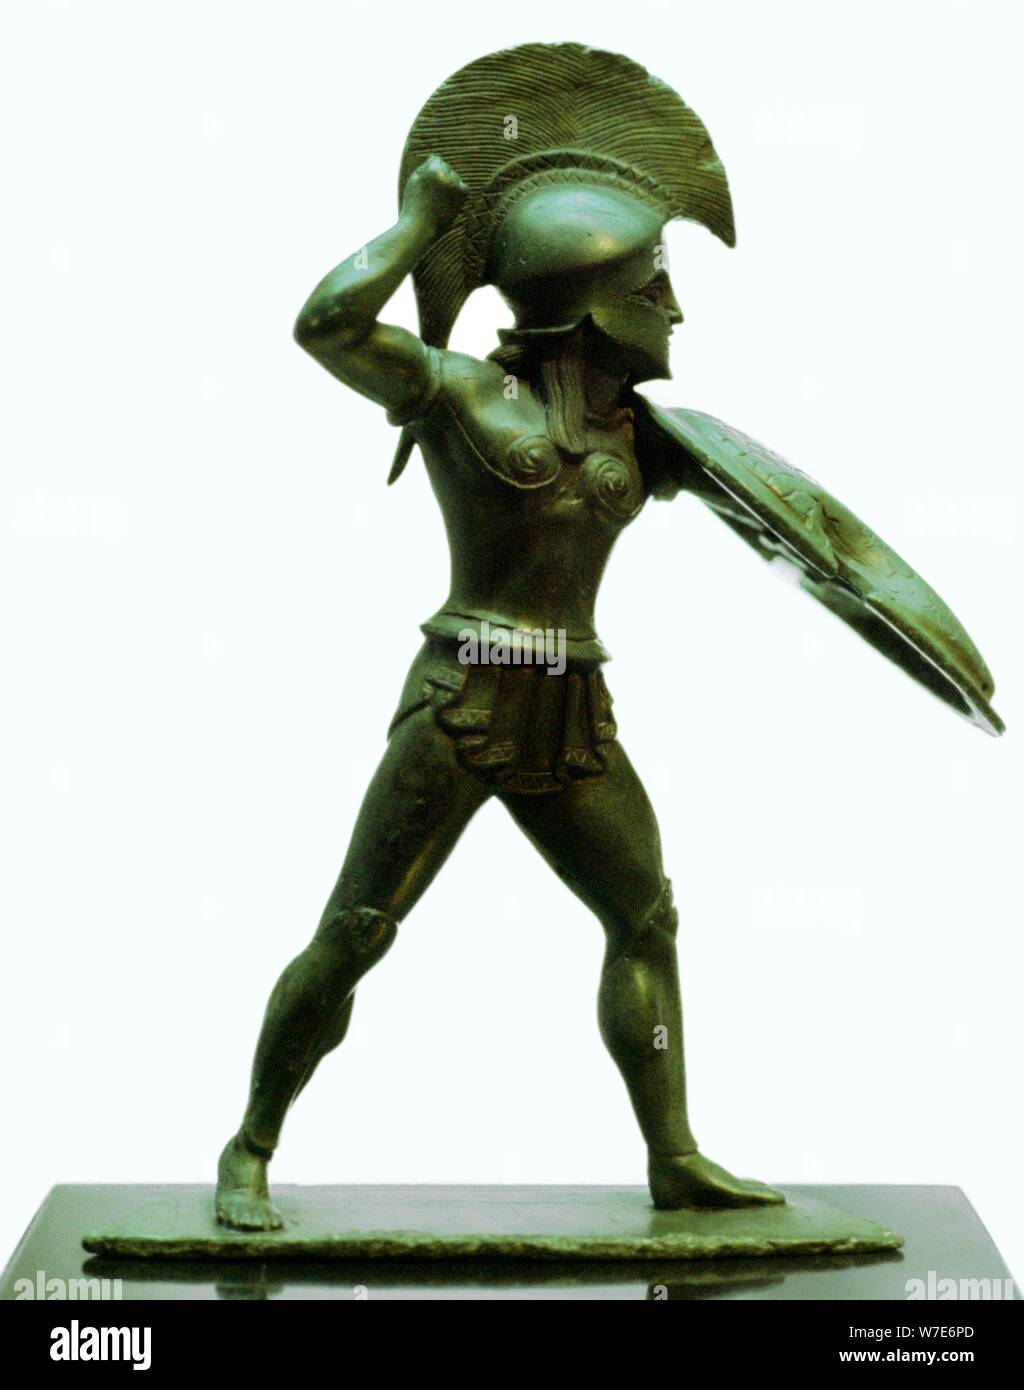 Une statuette en bronze d'un guerrier hoplite grec. Artiste : Inconnu Banque D'Images